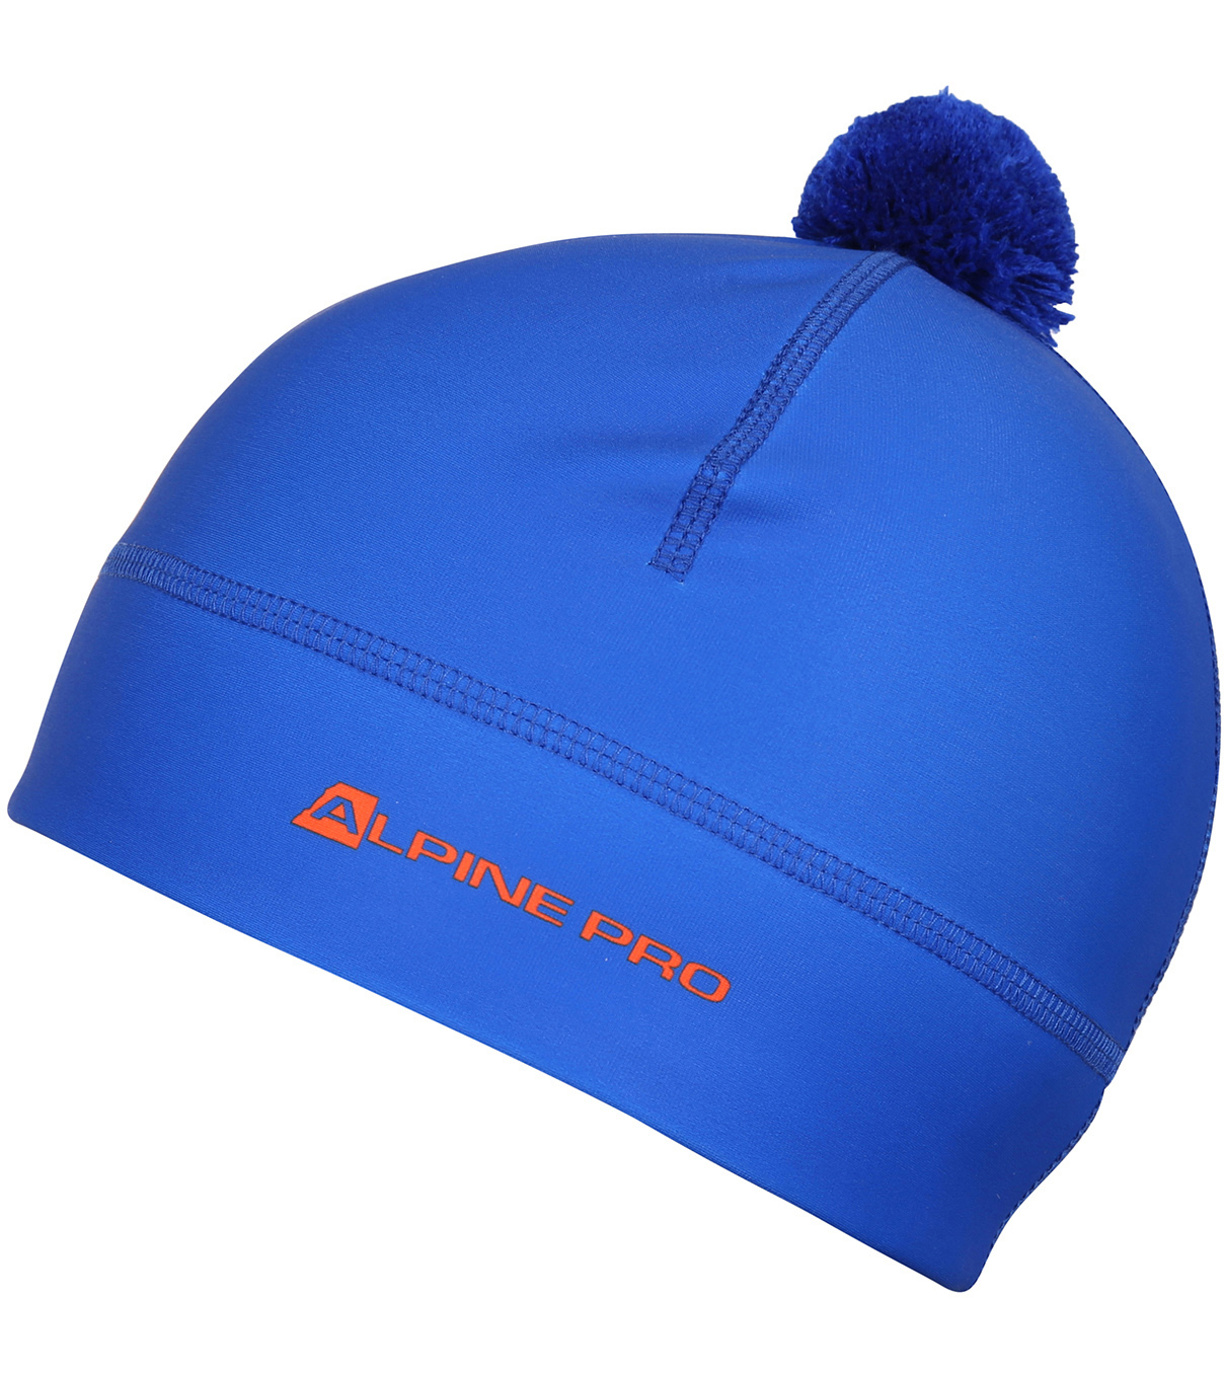 Unisex sportovní čepice ABERE ALPINE PRO cobalt blue